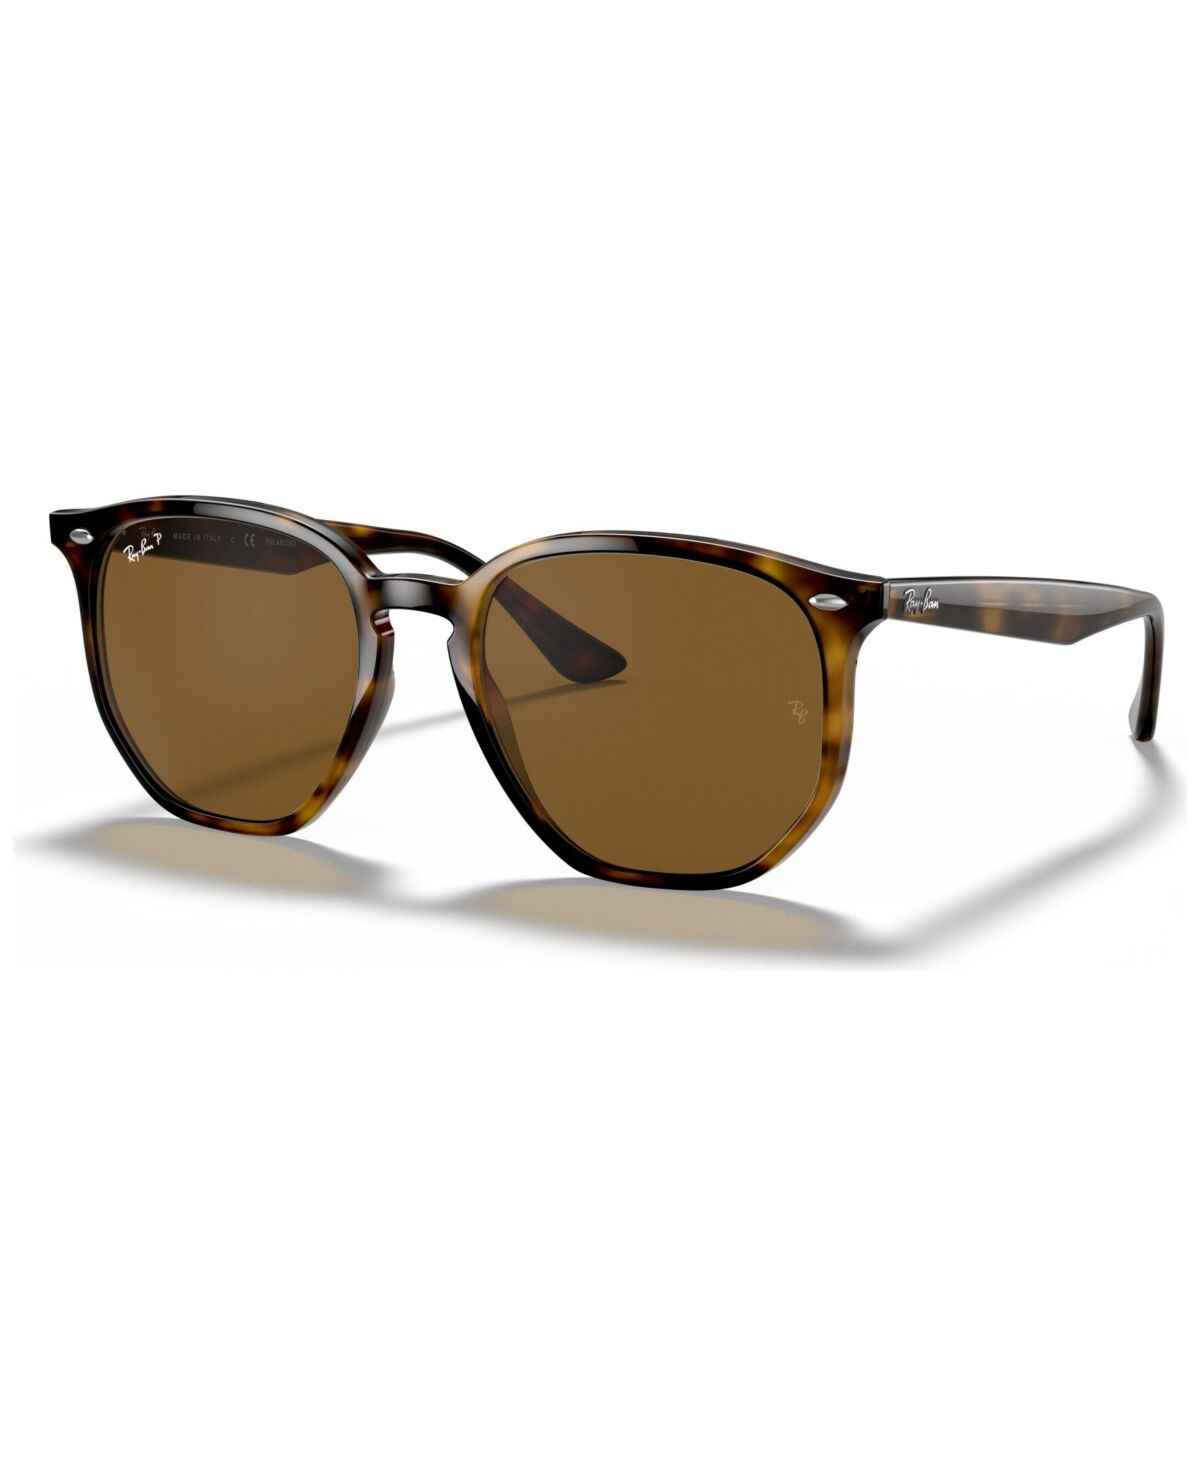 Ray-Ban Polarized Sunglasses, RB4306 54 - HAVANA/POLAR BROWN